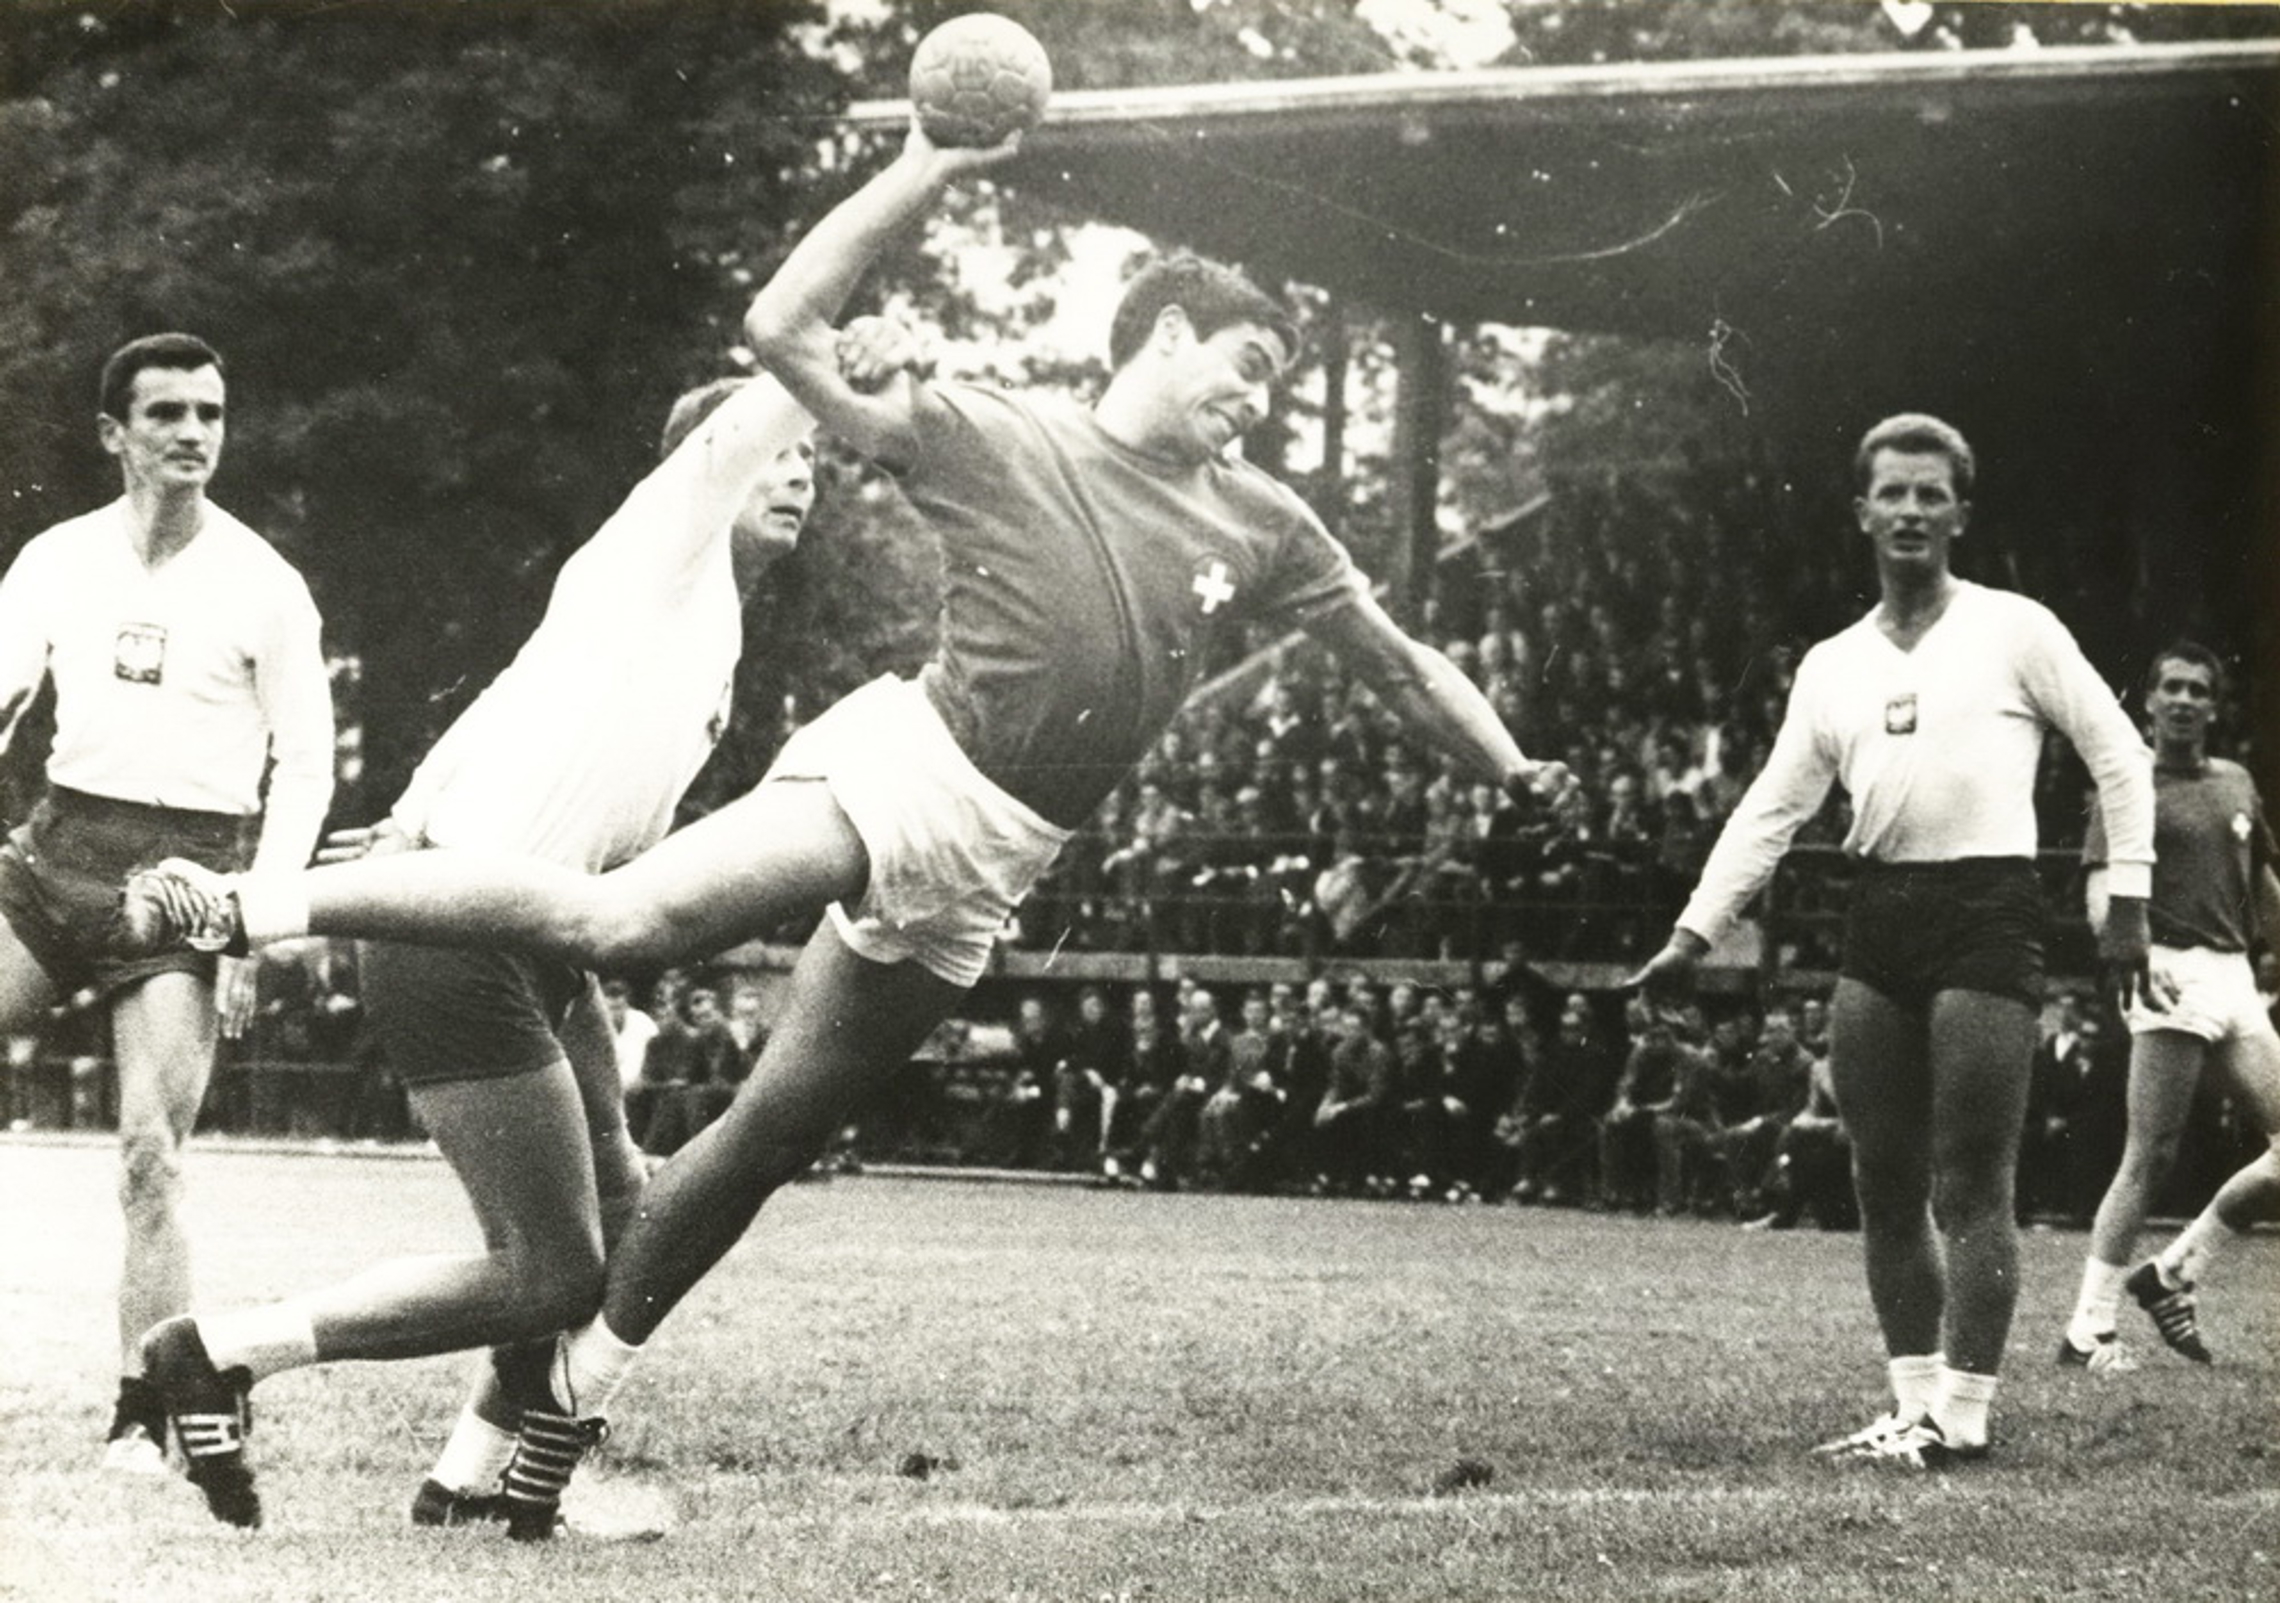 25.6.1966 Polen - Schweiz15:13 (8:8) Dornbirn, 5000 Zuschauer, Schiedsrichter Schoof, DDR